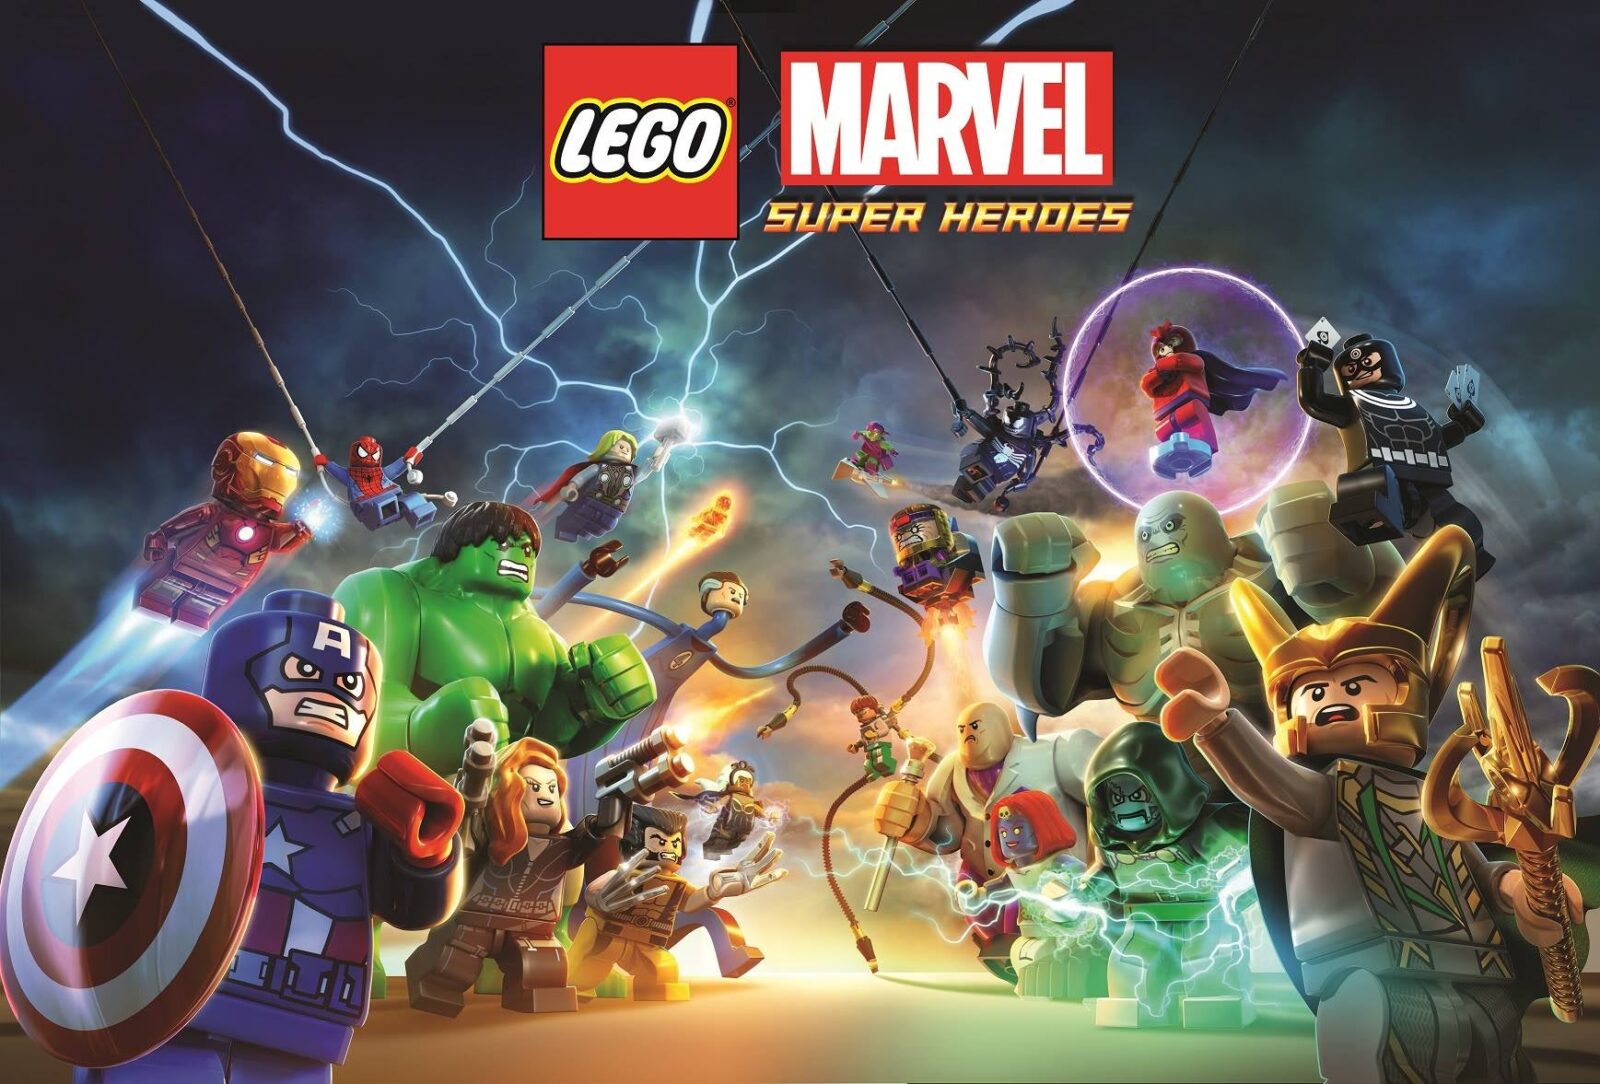 LEGO Marvel Super Heroes é anunciado para Nintendo Switch